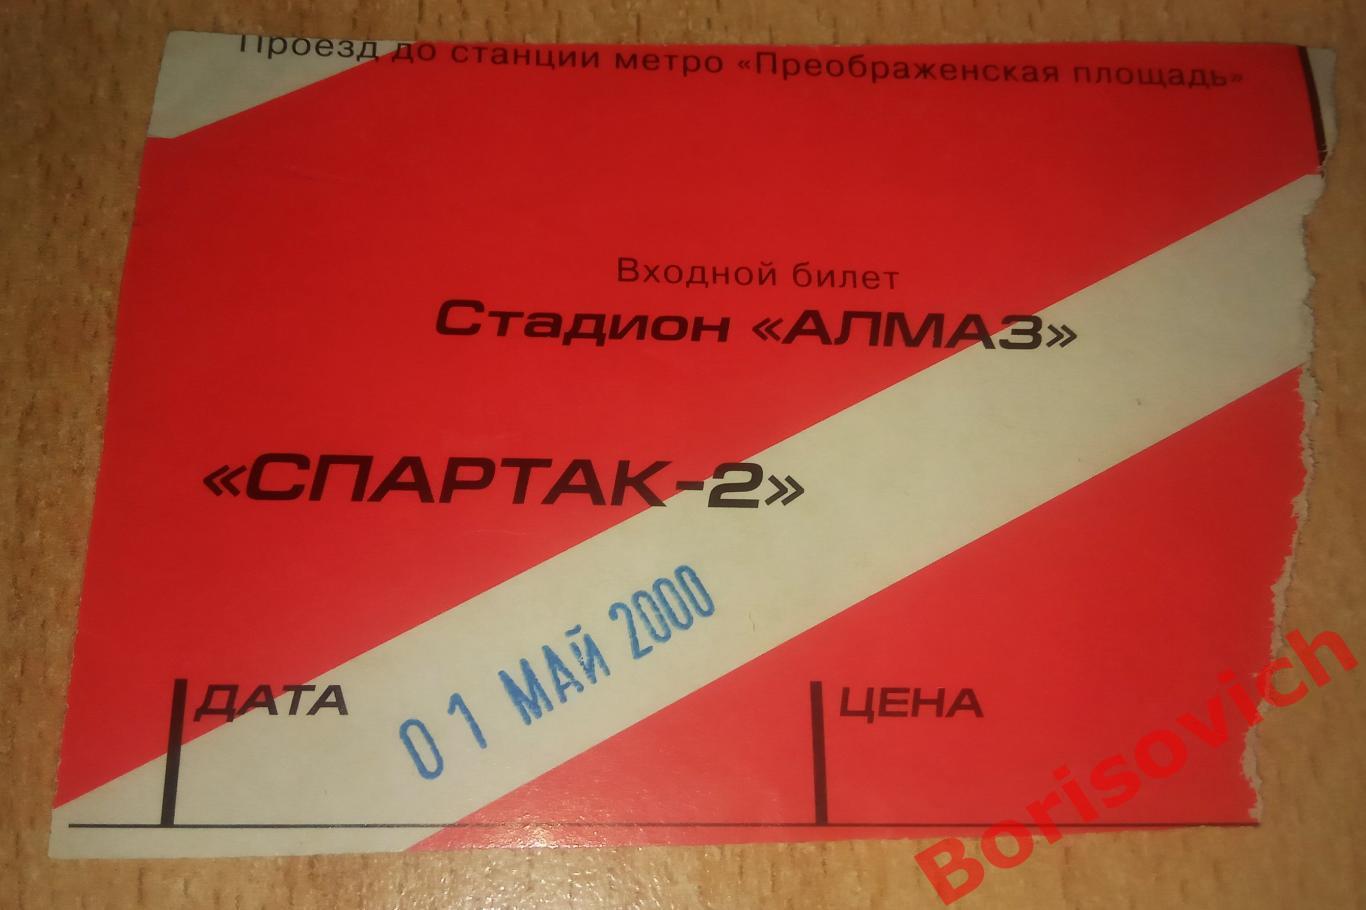 Билет Спартак - 2 Москва - Оазис Ярцево 01-05-2000 ОБМЕН